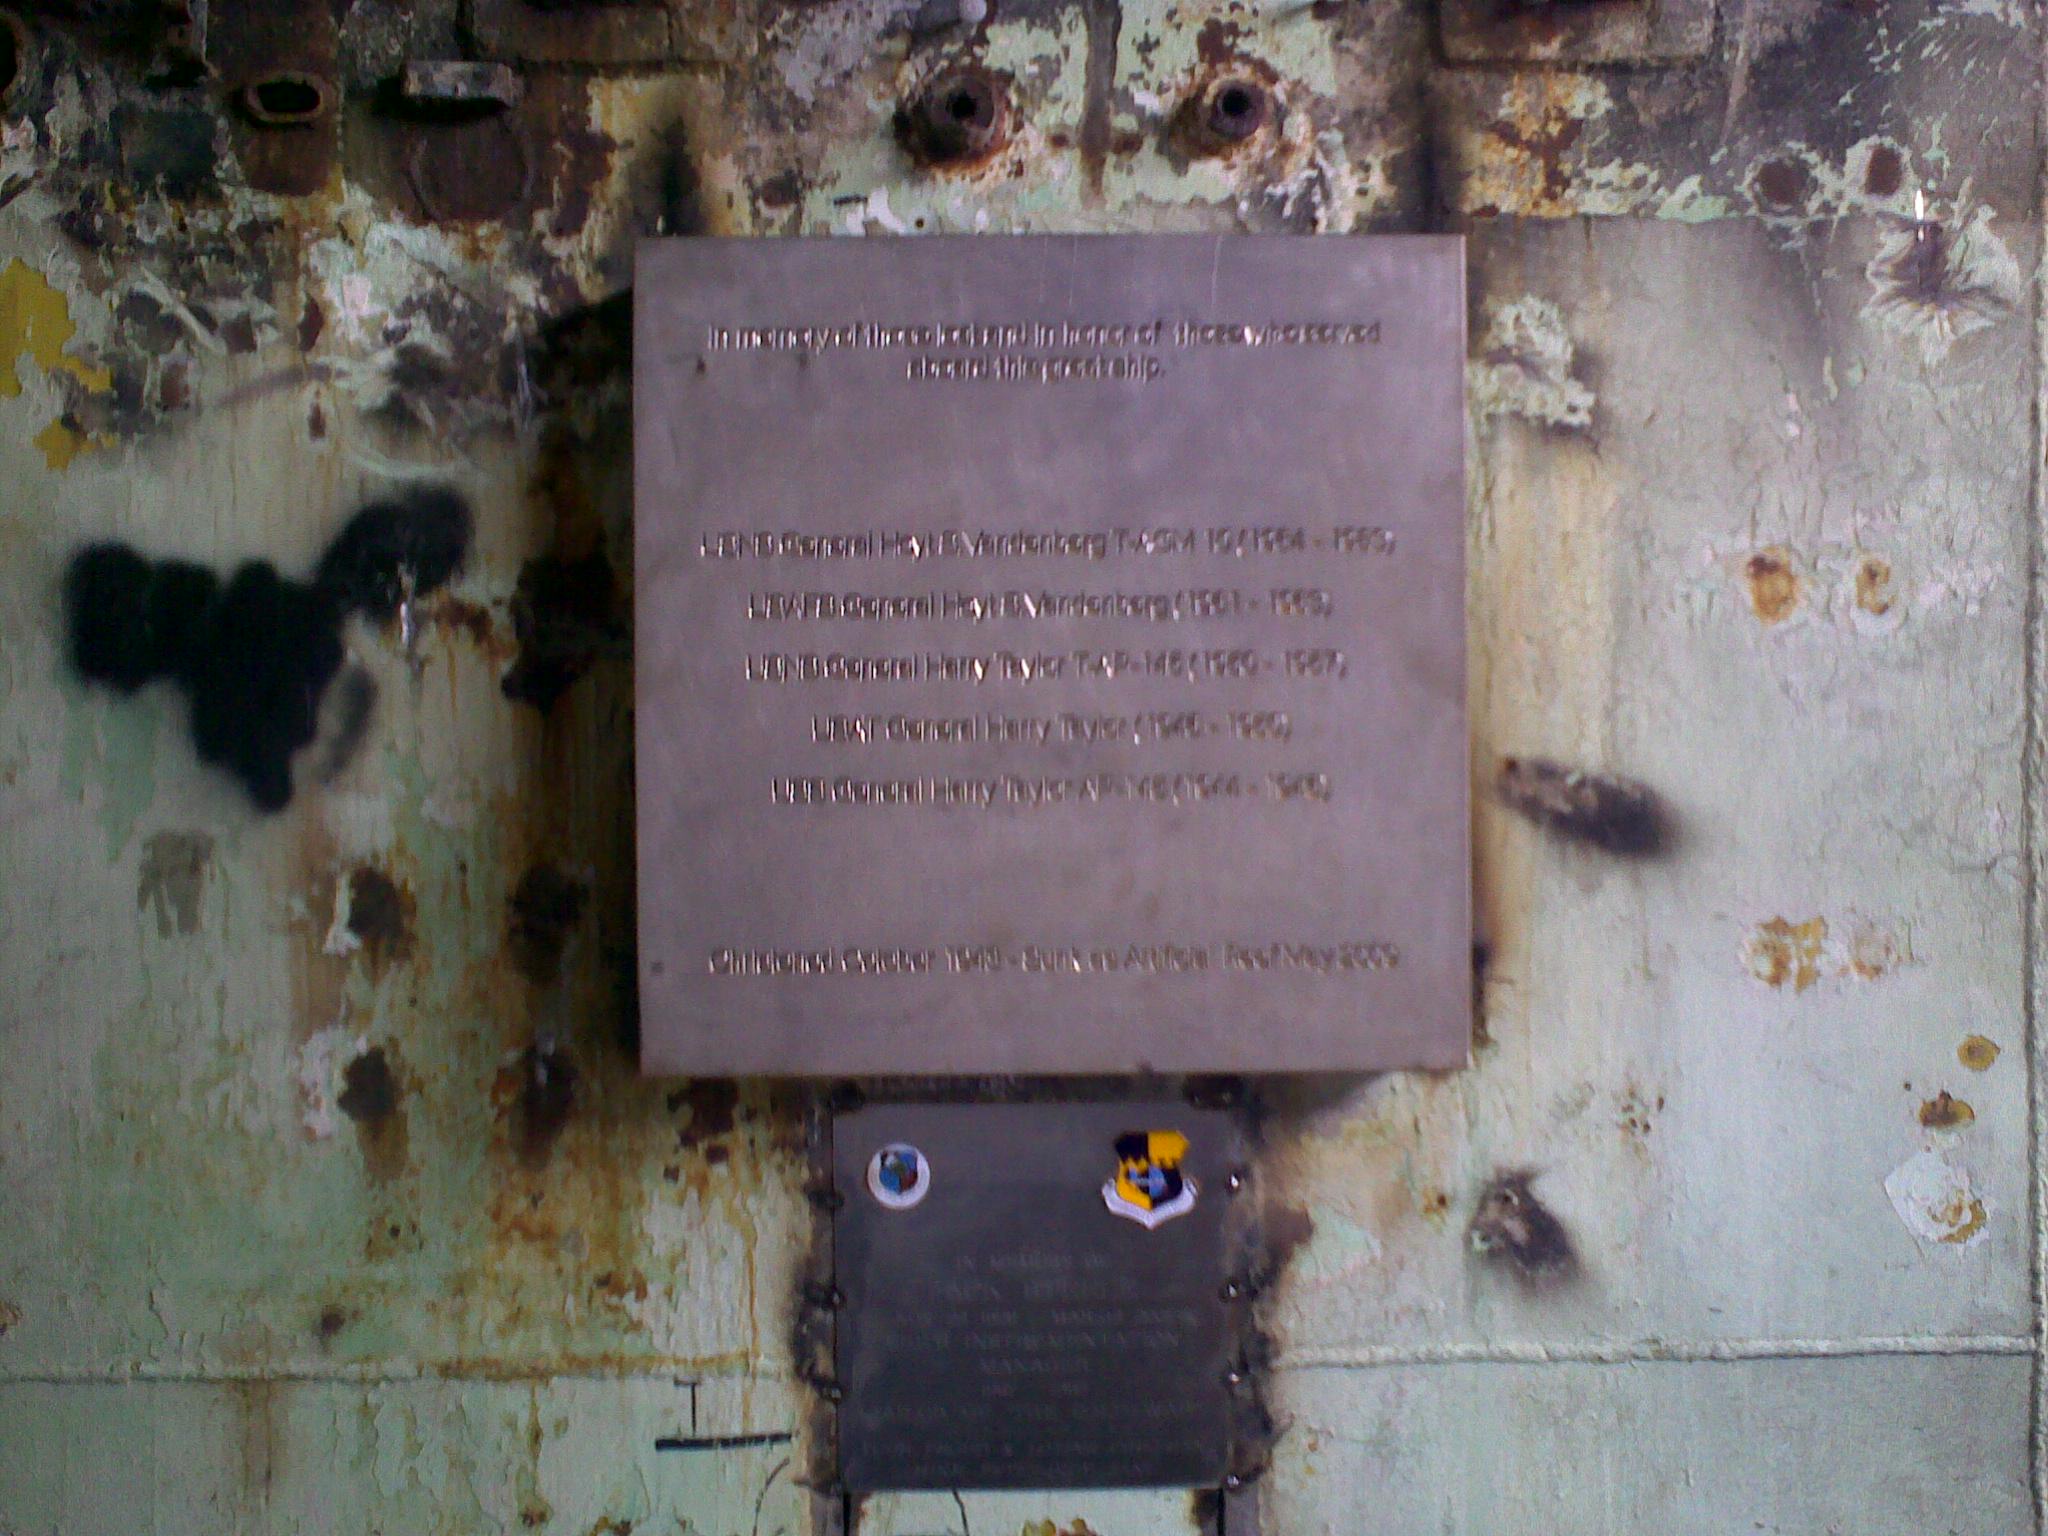 Memorial plaque Vandenberg